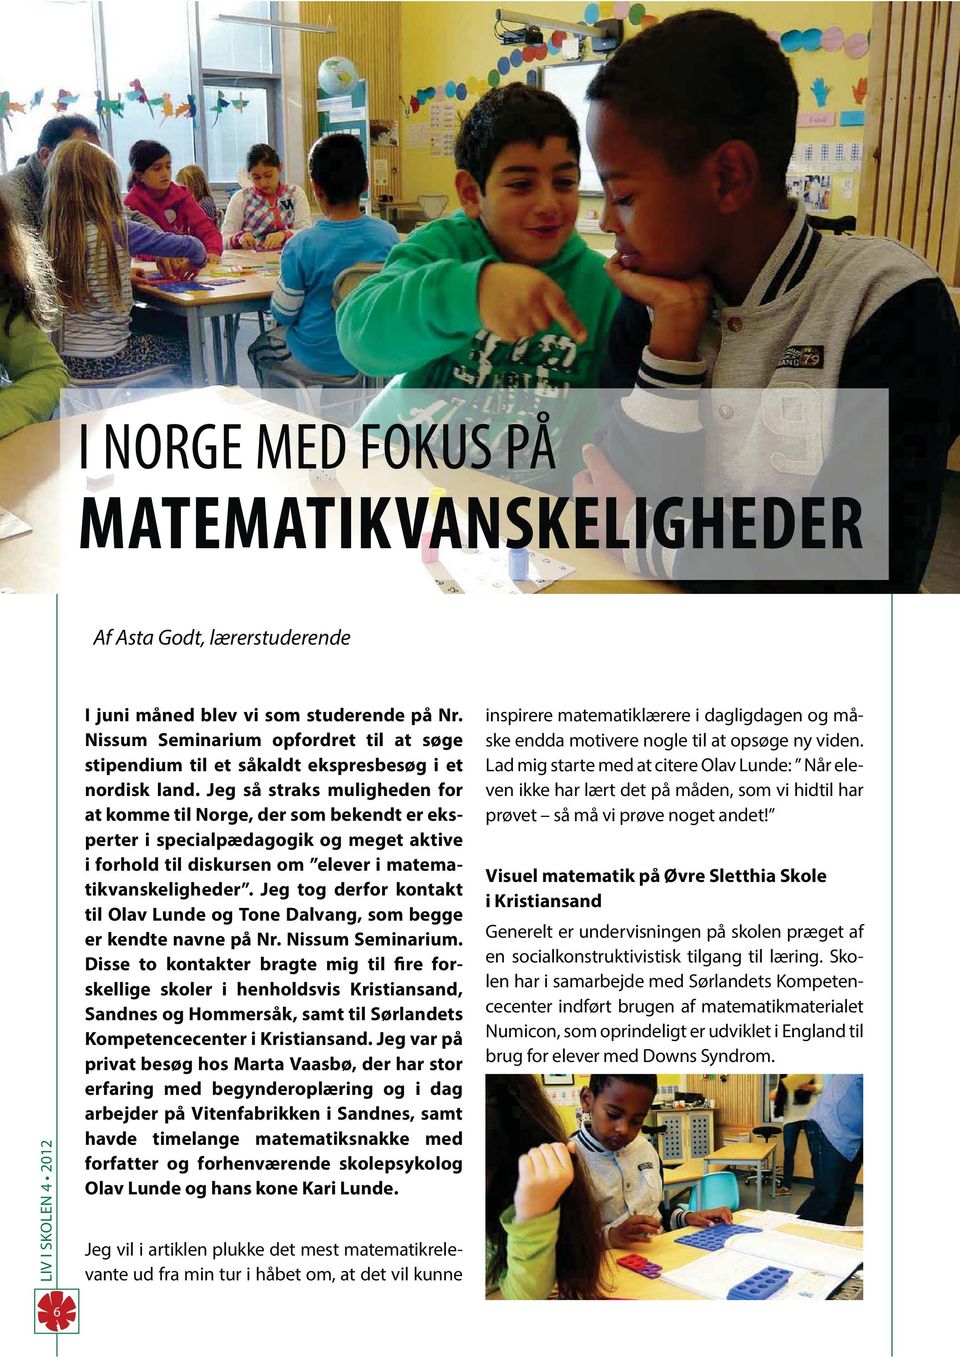 Jeg så straks muligheden for at komme til Norge, der som bekendt er eksperter i specialpædagogik og meget aktive i forhold til diskursen om elever i matematikvanskeligheder.